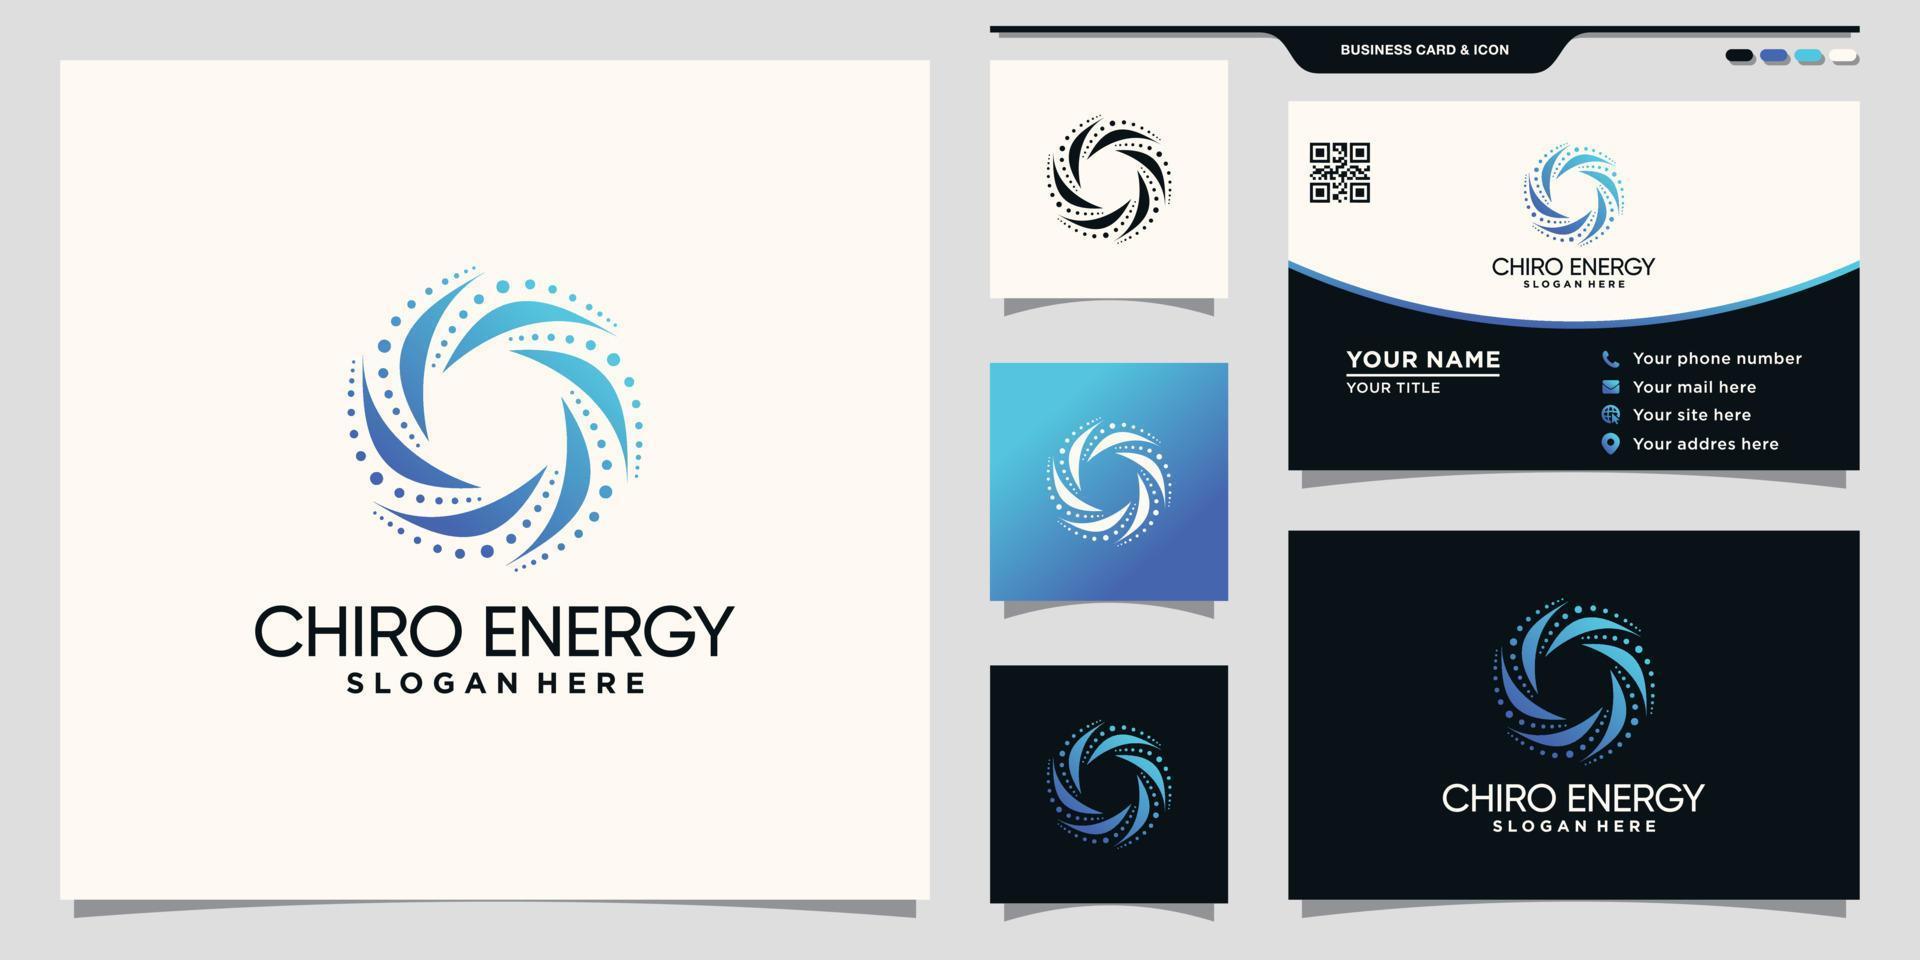 kreatives Chiro-Energie-Logo mit einzigartigem Konzept und Visitenkarten-Design Premium-Vektor vektor